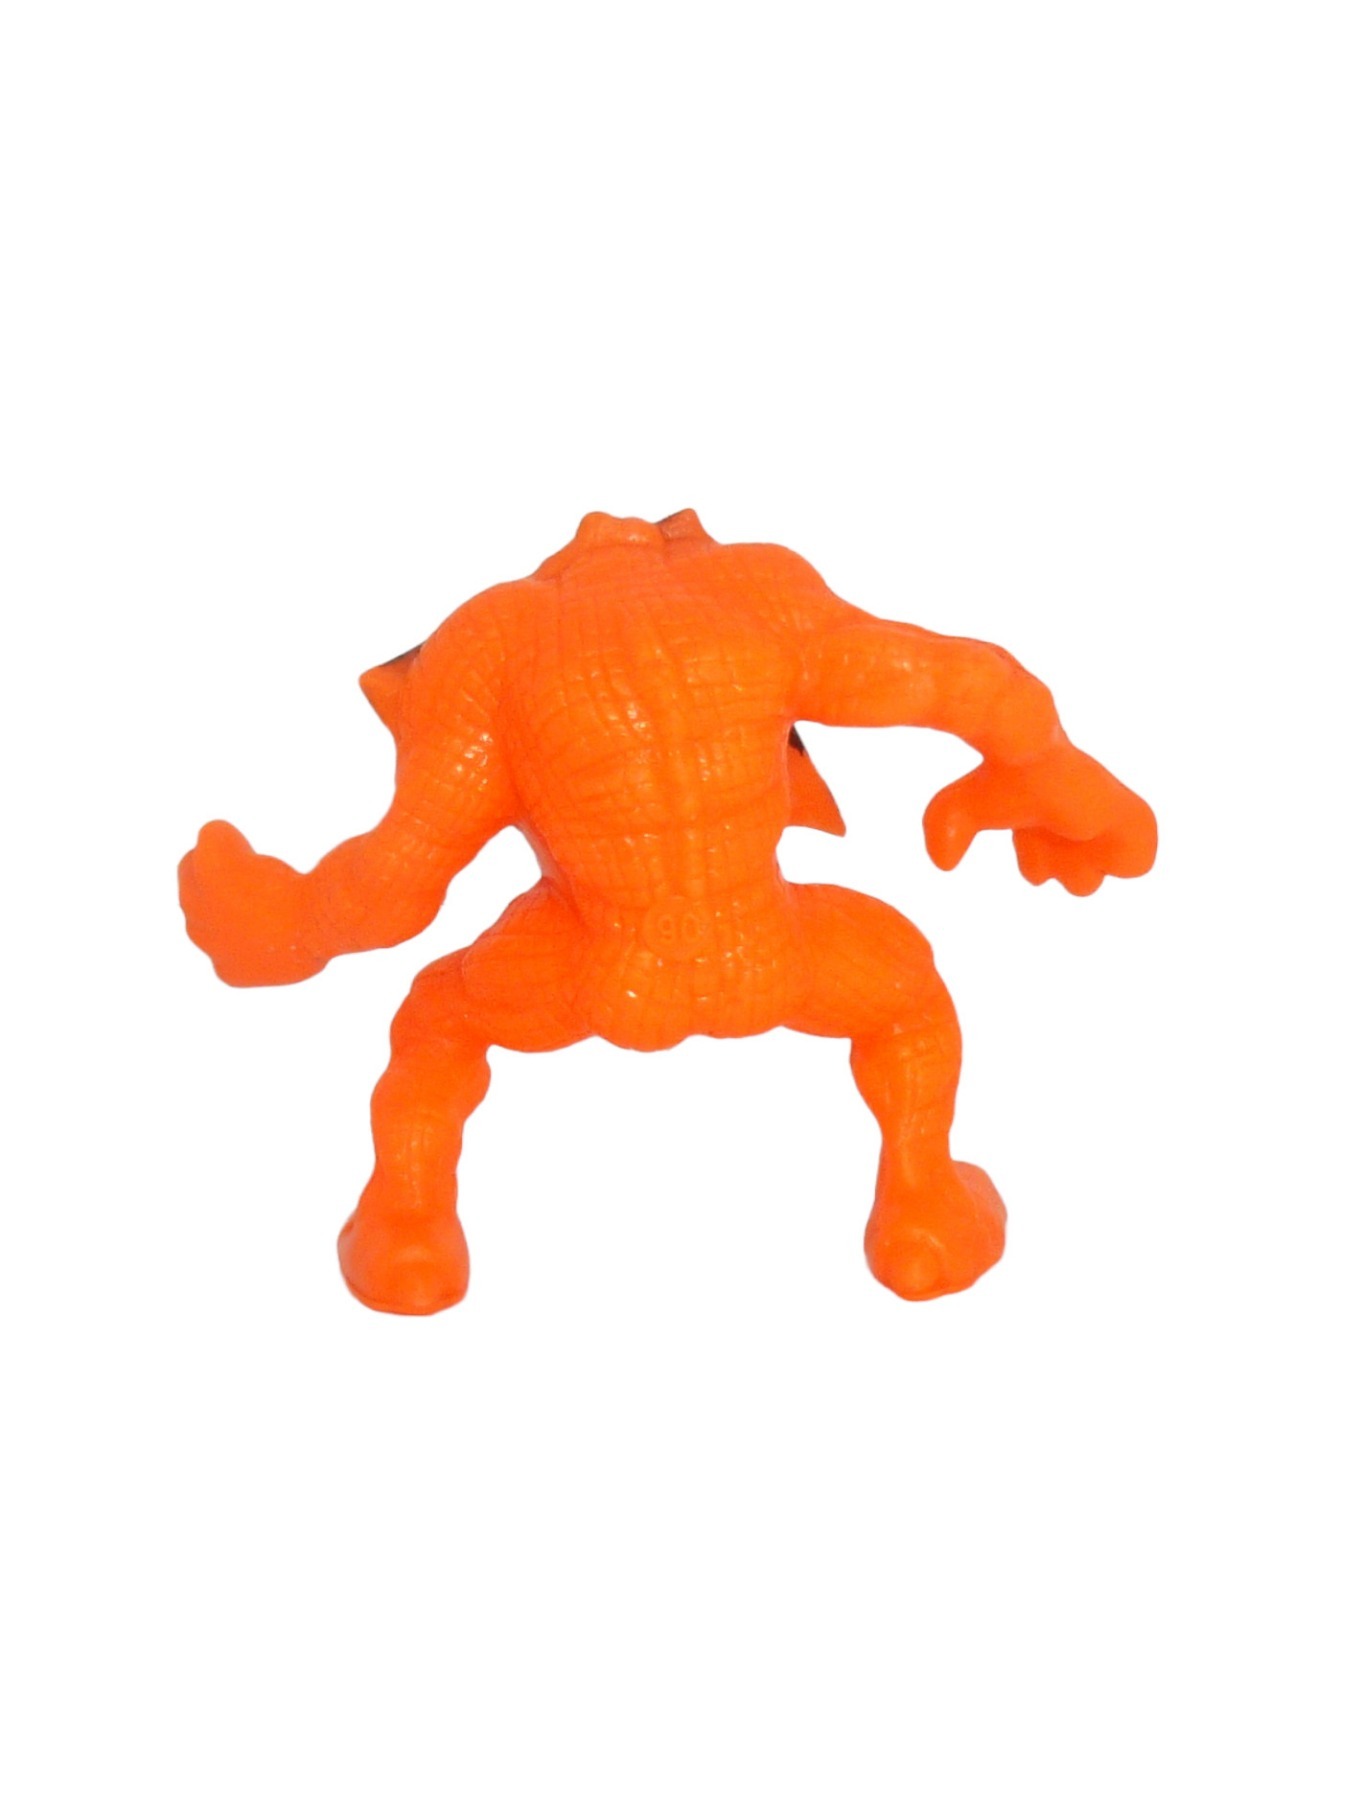 Creature from the Closet orange Nr 106 2